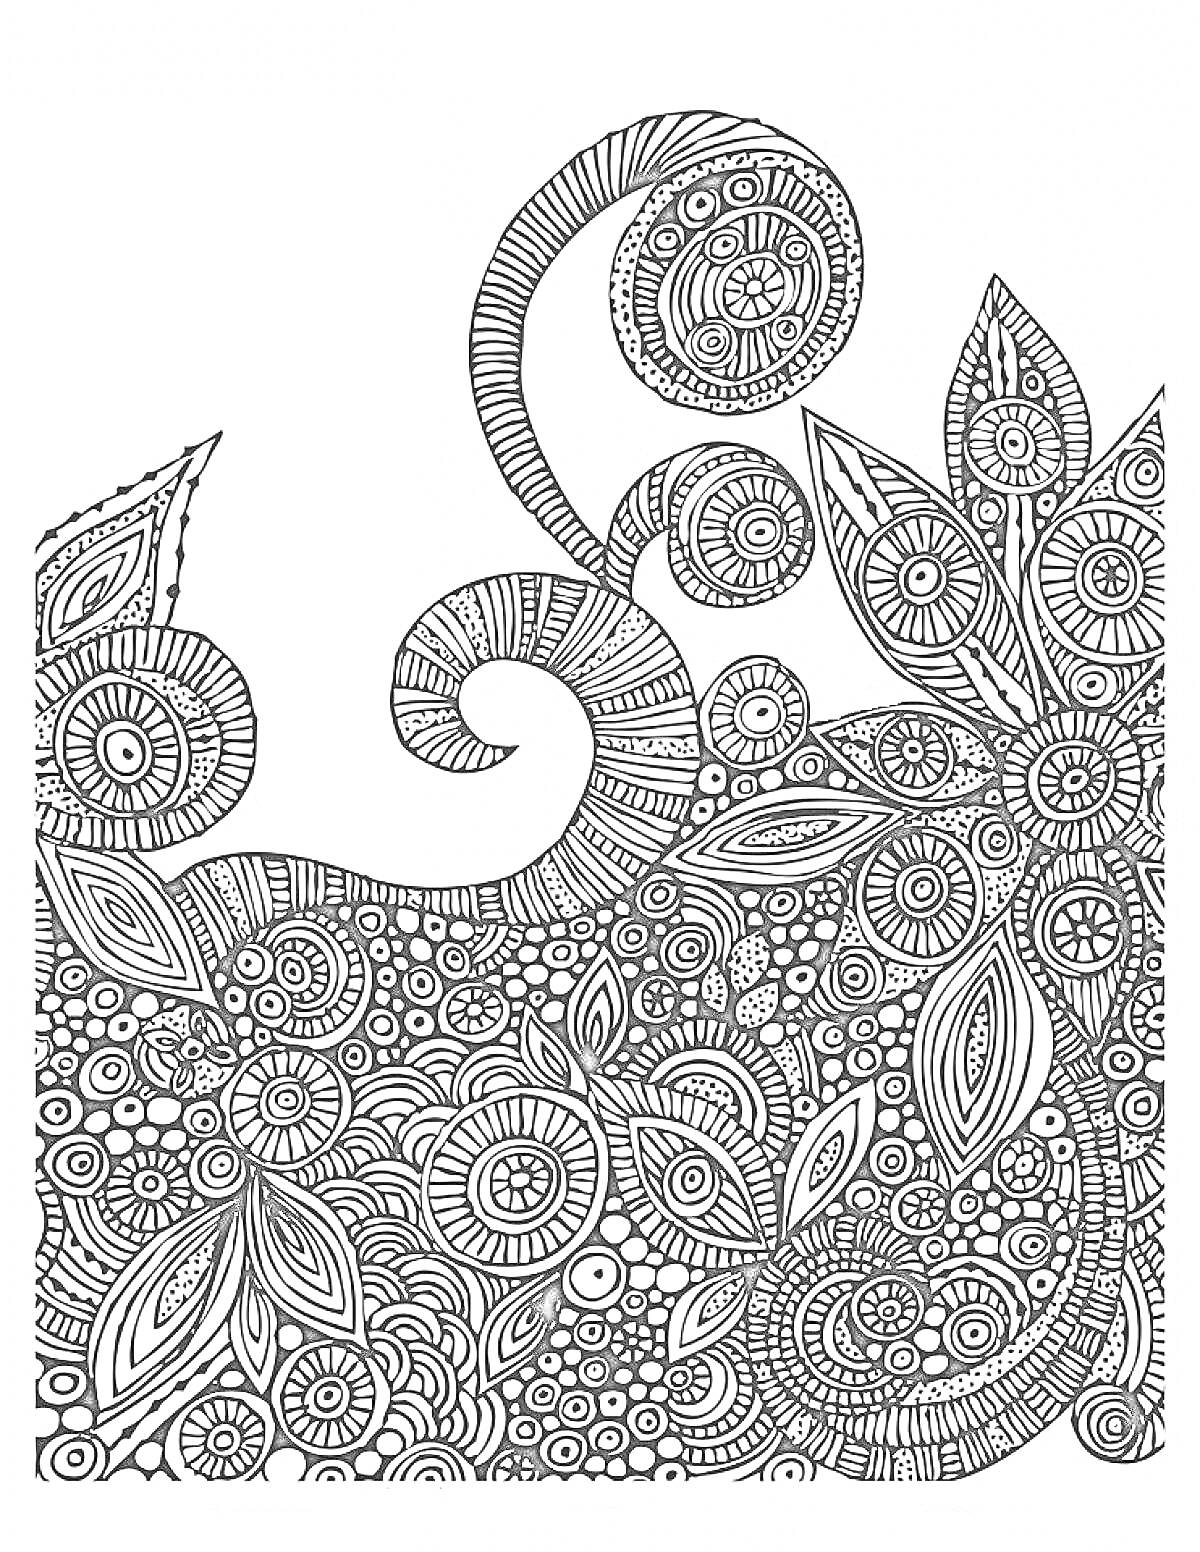 Абстрактная раскраска в стиле дудлинг с круглыми узорами и листьями